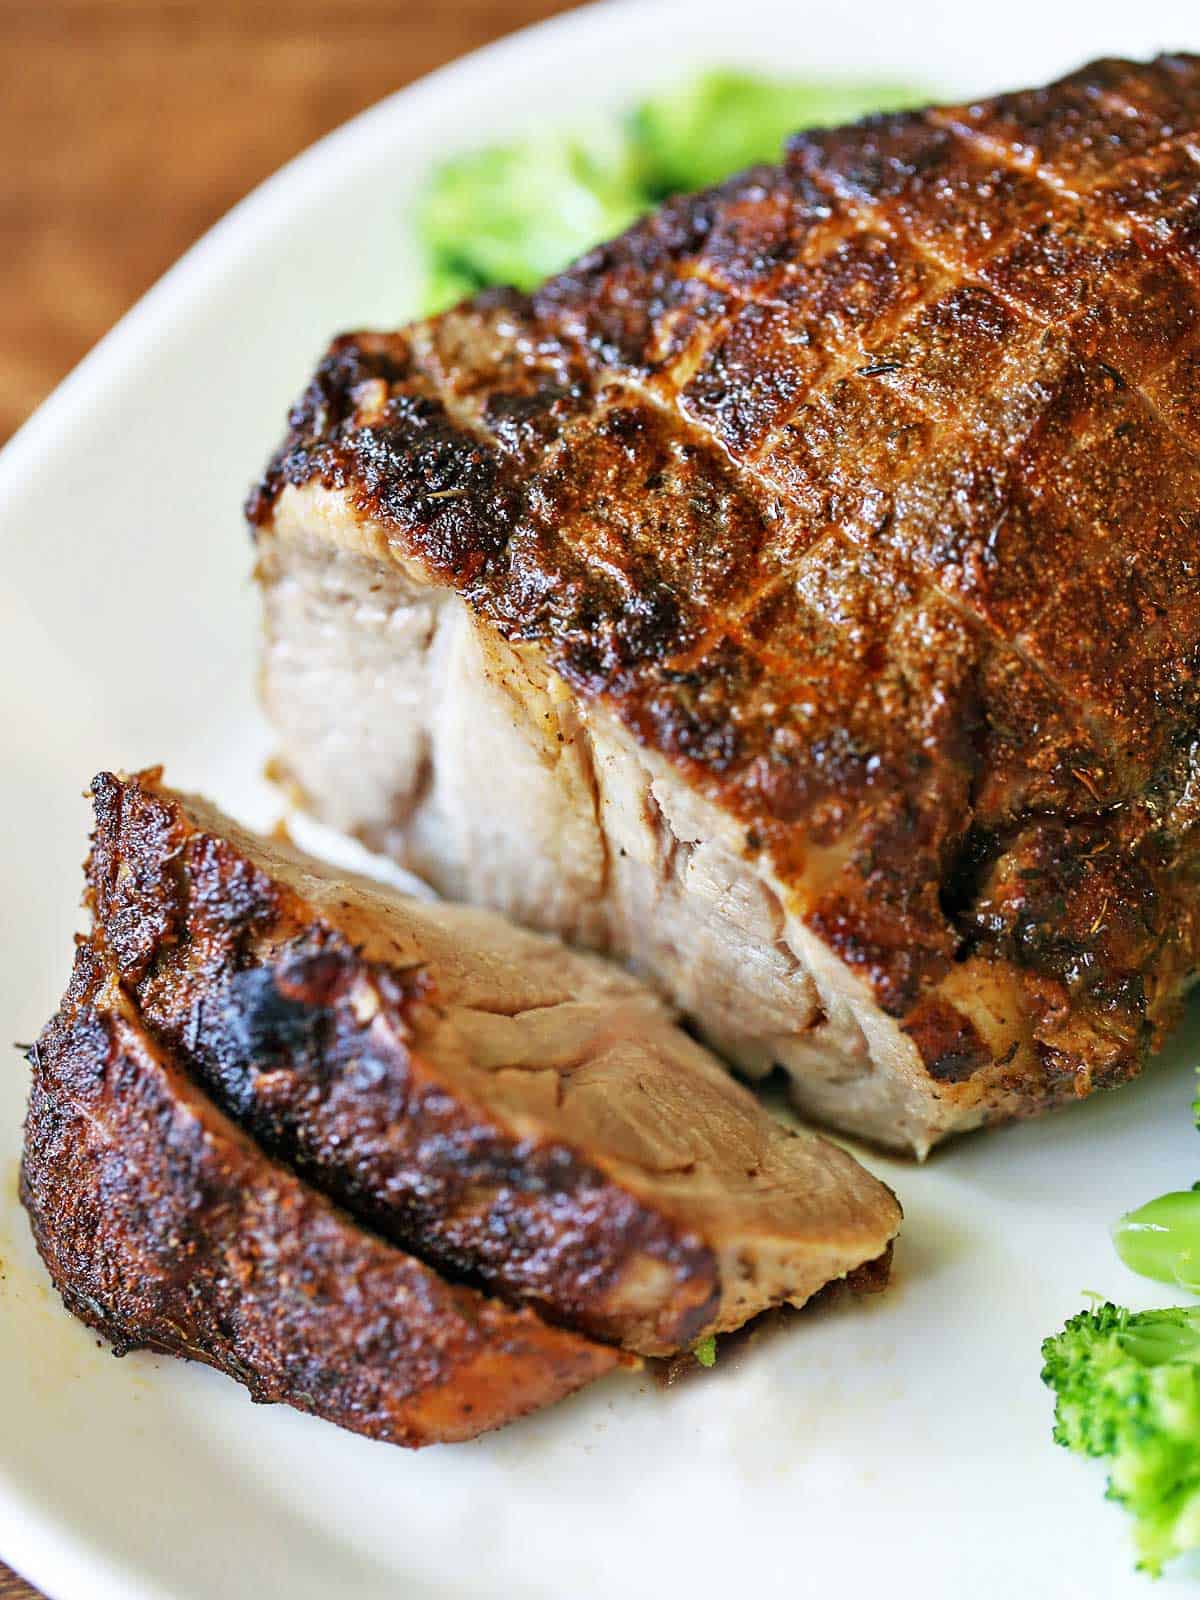 Oven-baked boneless pork roast served on a white platter with veggies.